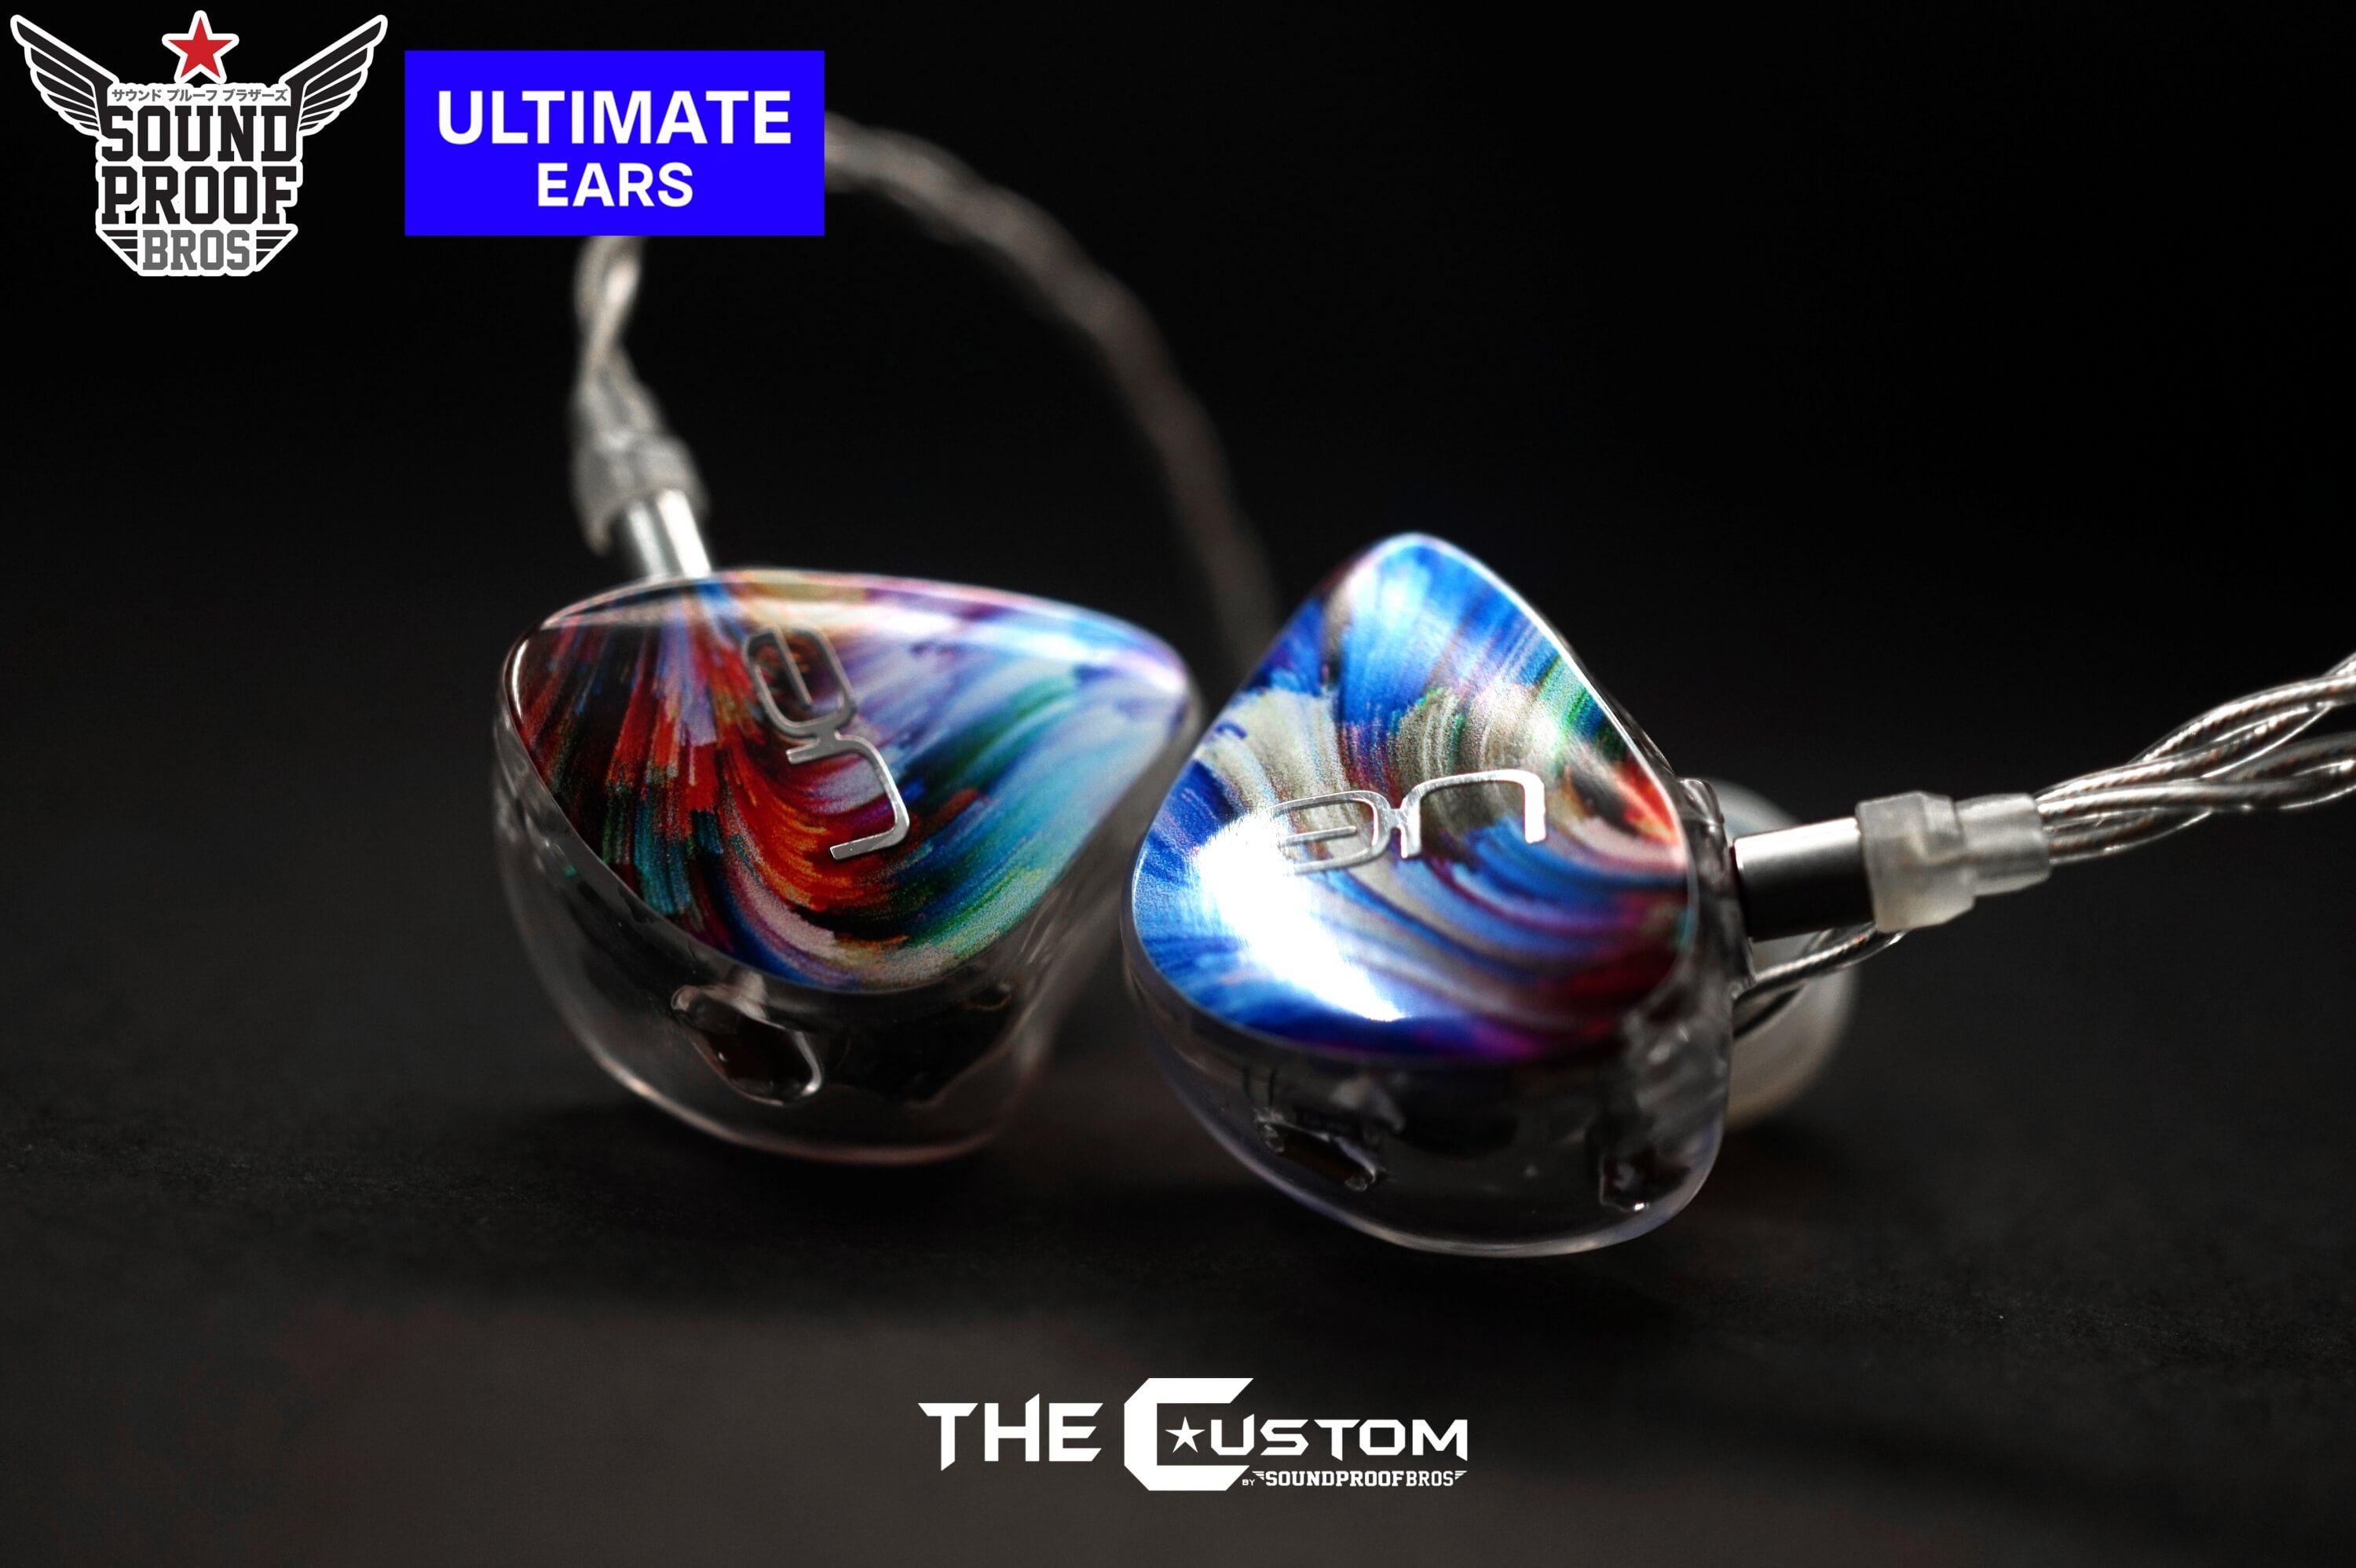 รีวิว Ultimate Ears UE Live : SoundProofBros จำหน่ายอุปกรณ์ที่เกี่ยวกับ